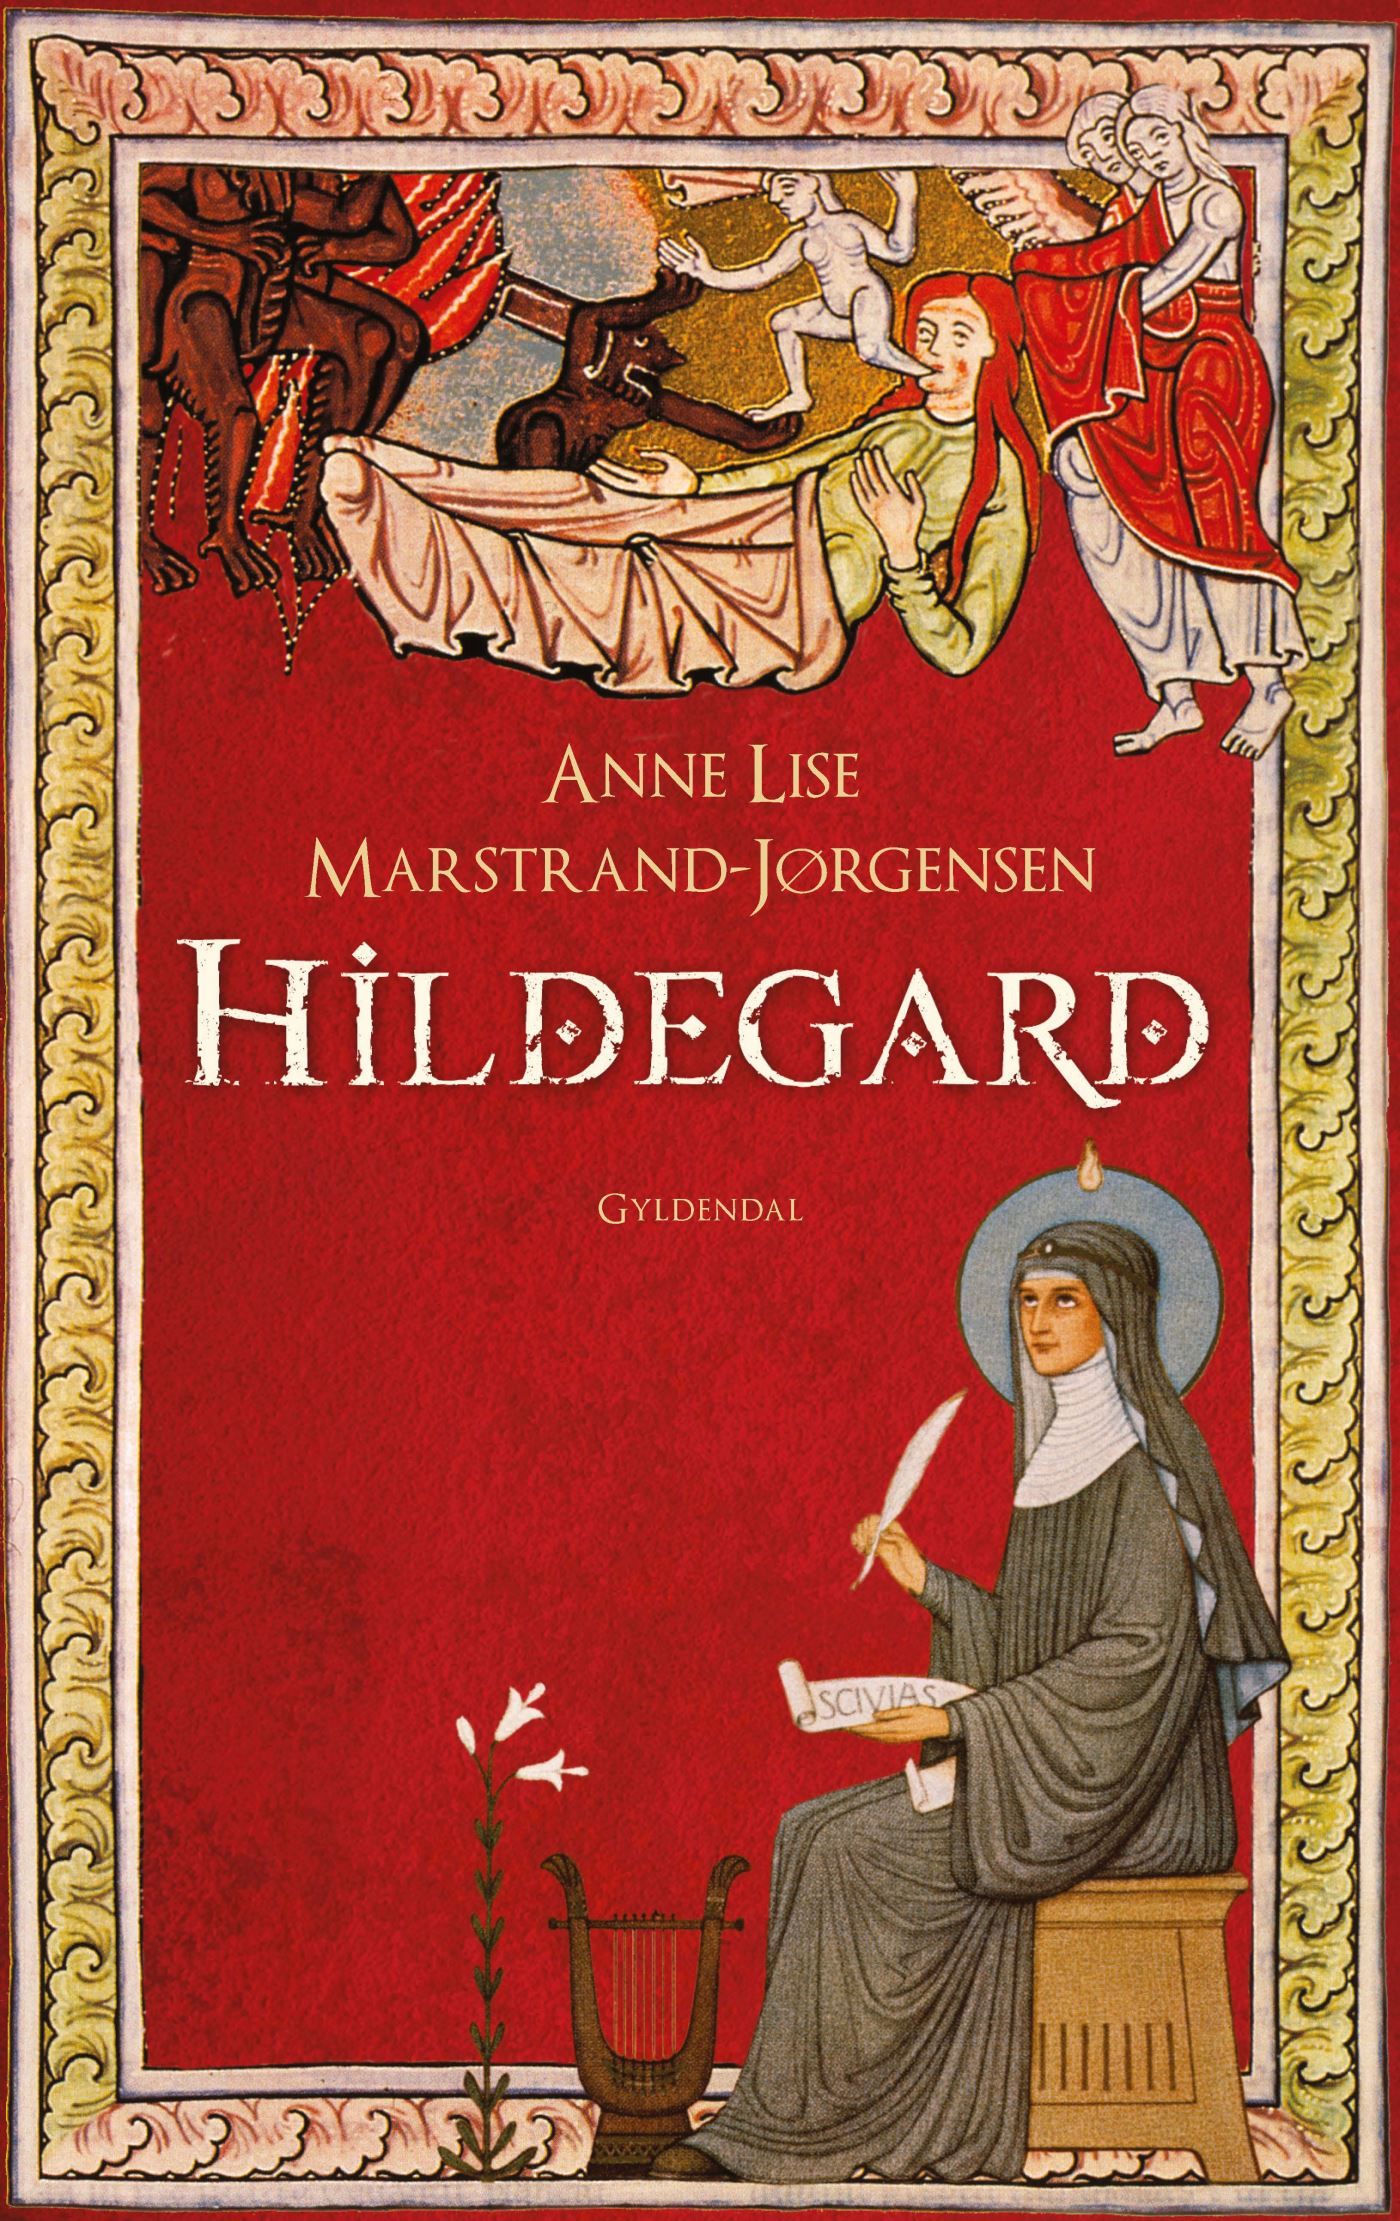 Hildegard, eBook by Anne Lise Marstrand-Jørgensen